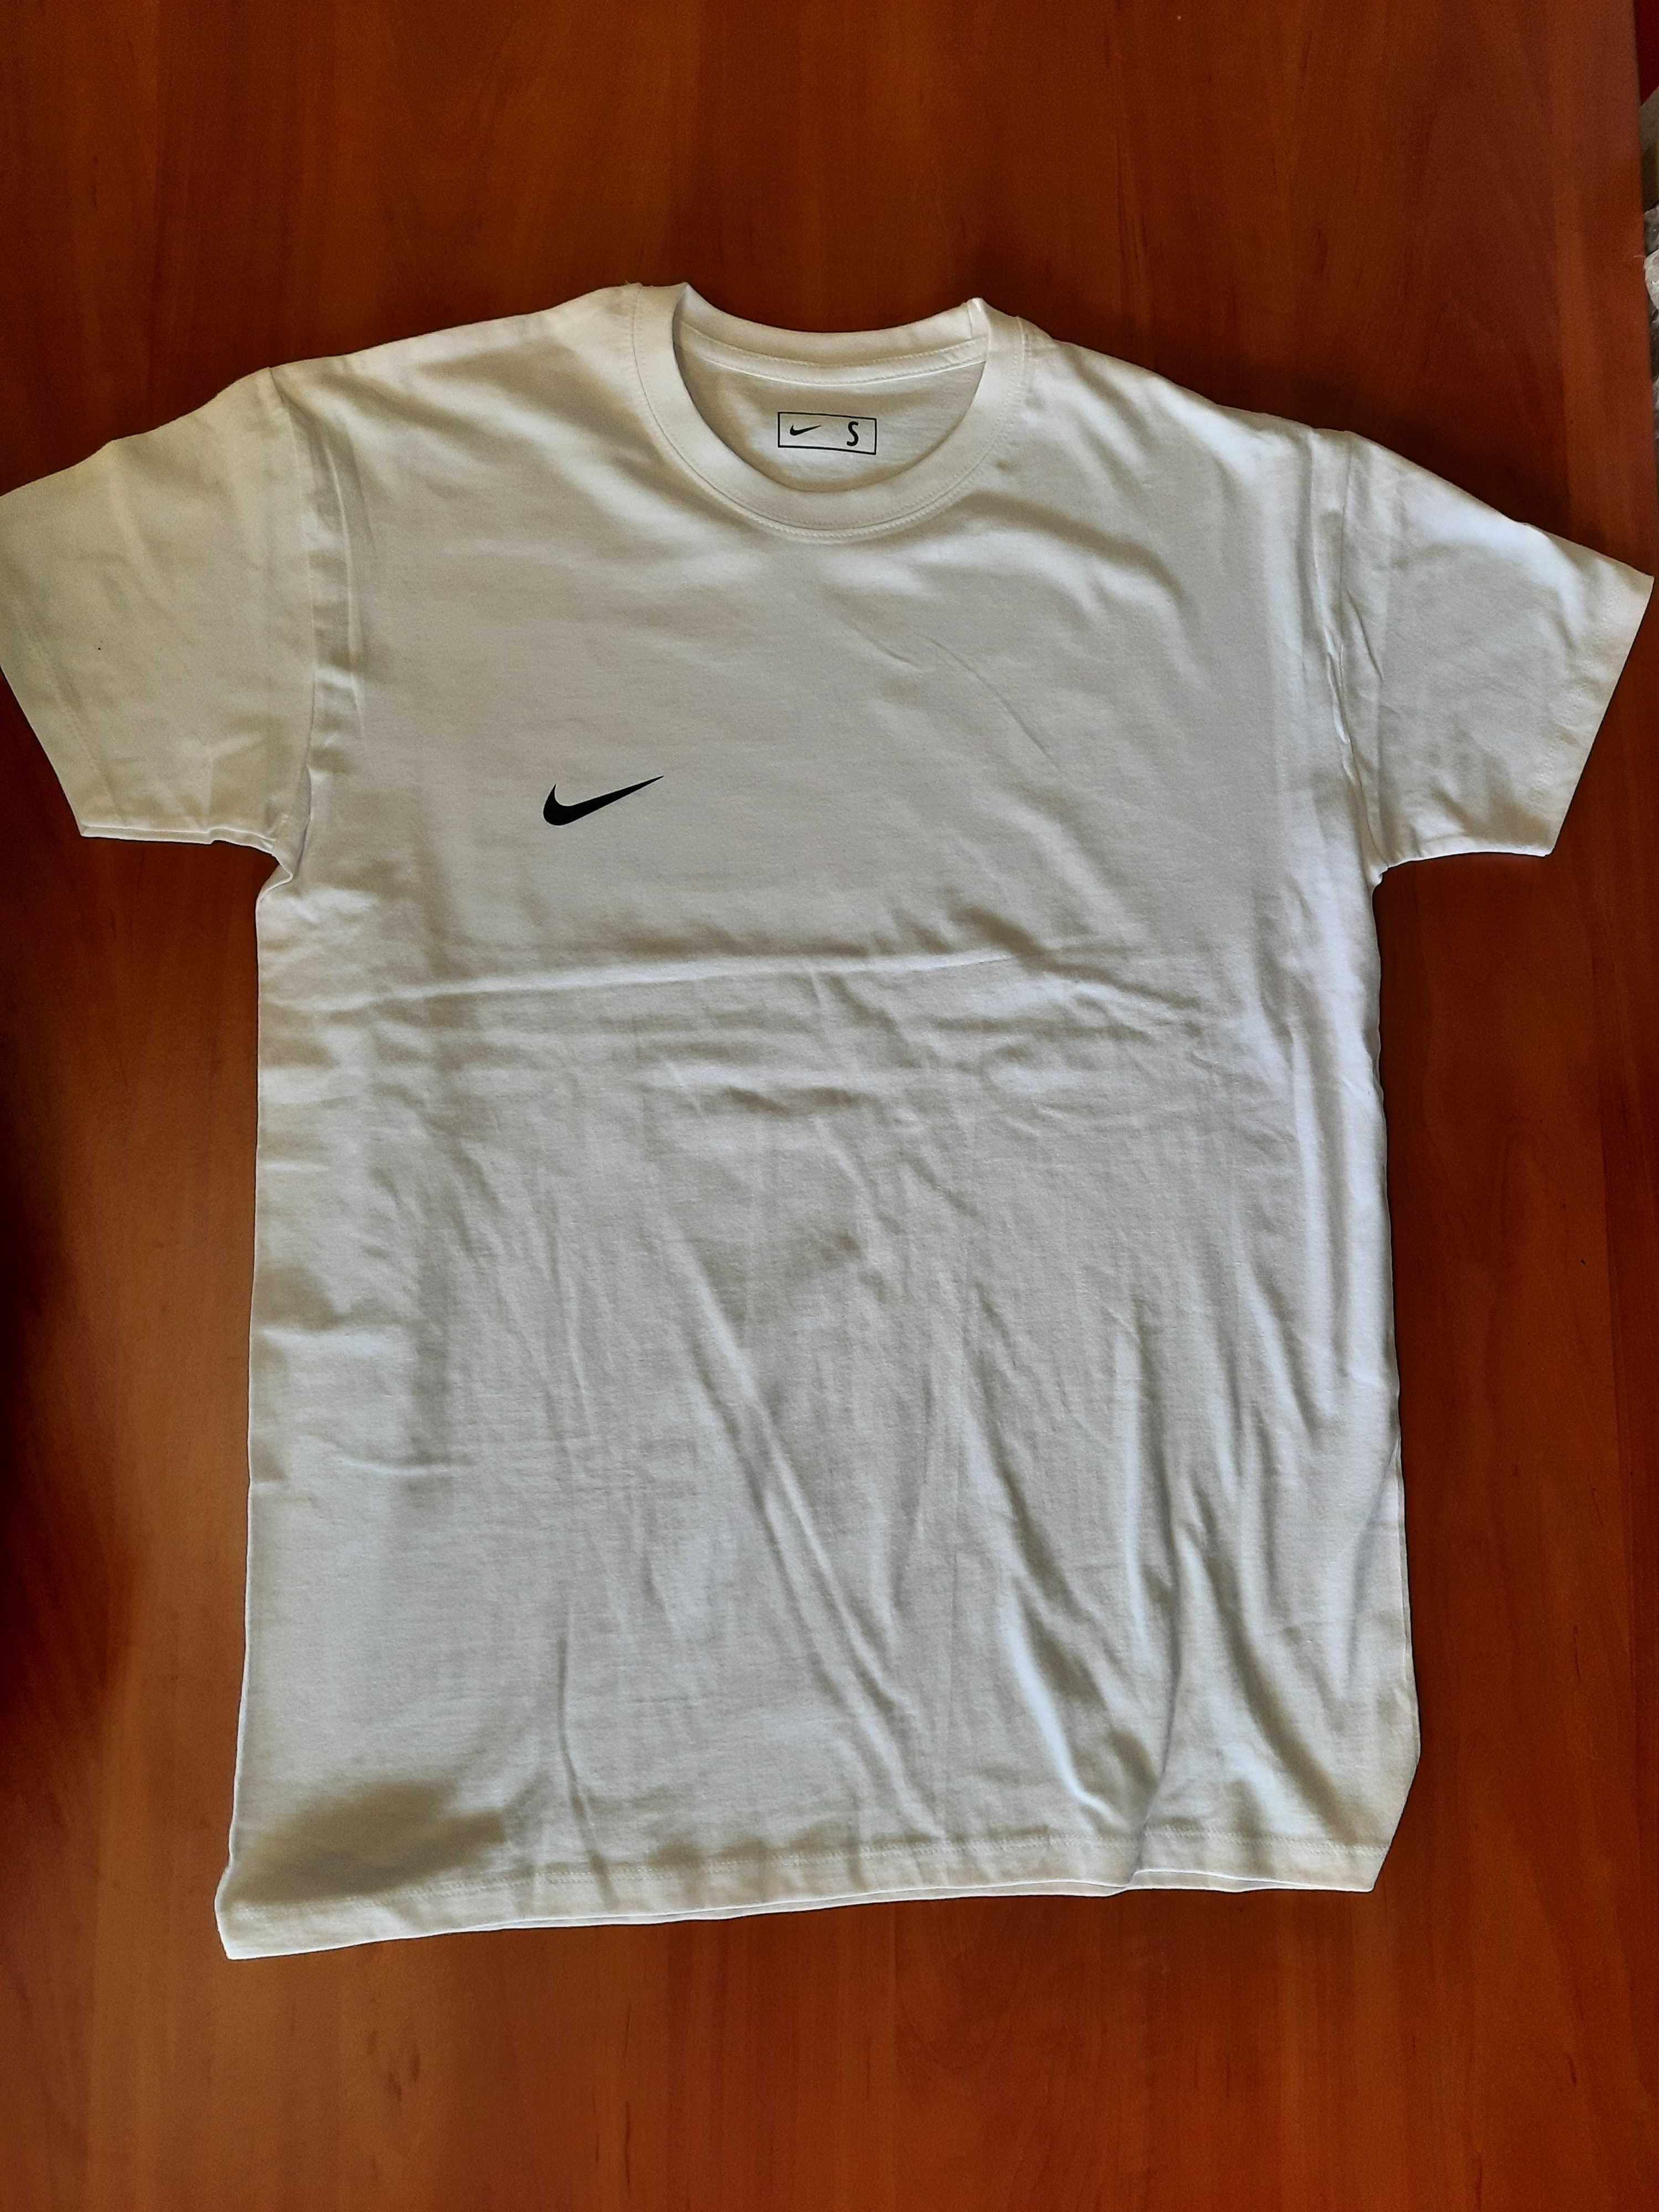 Koszulka biala Nike rozmiar S. Nowa 100% bawelna